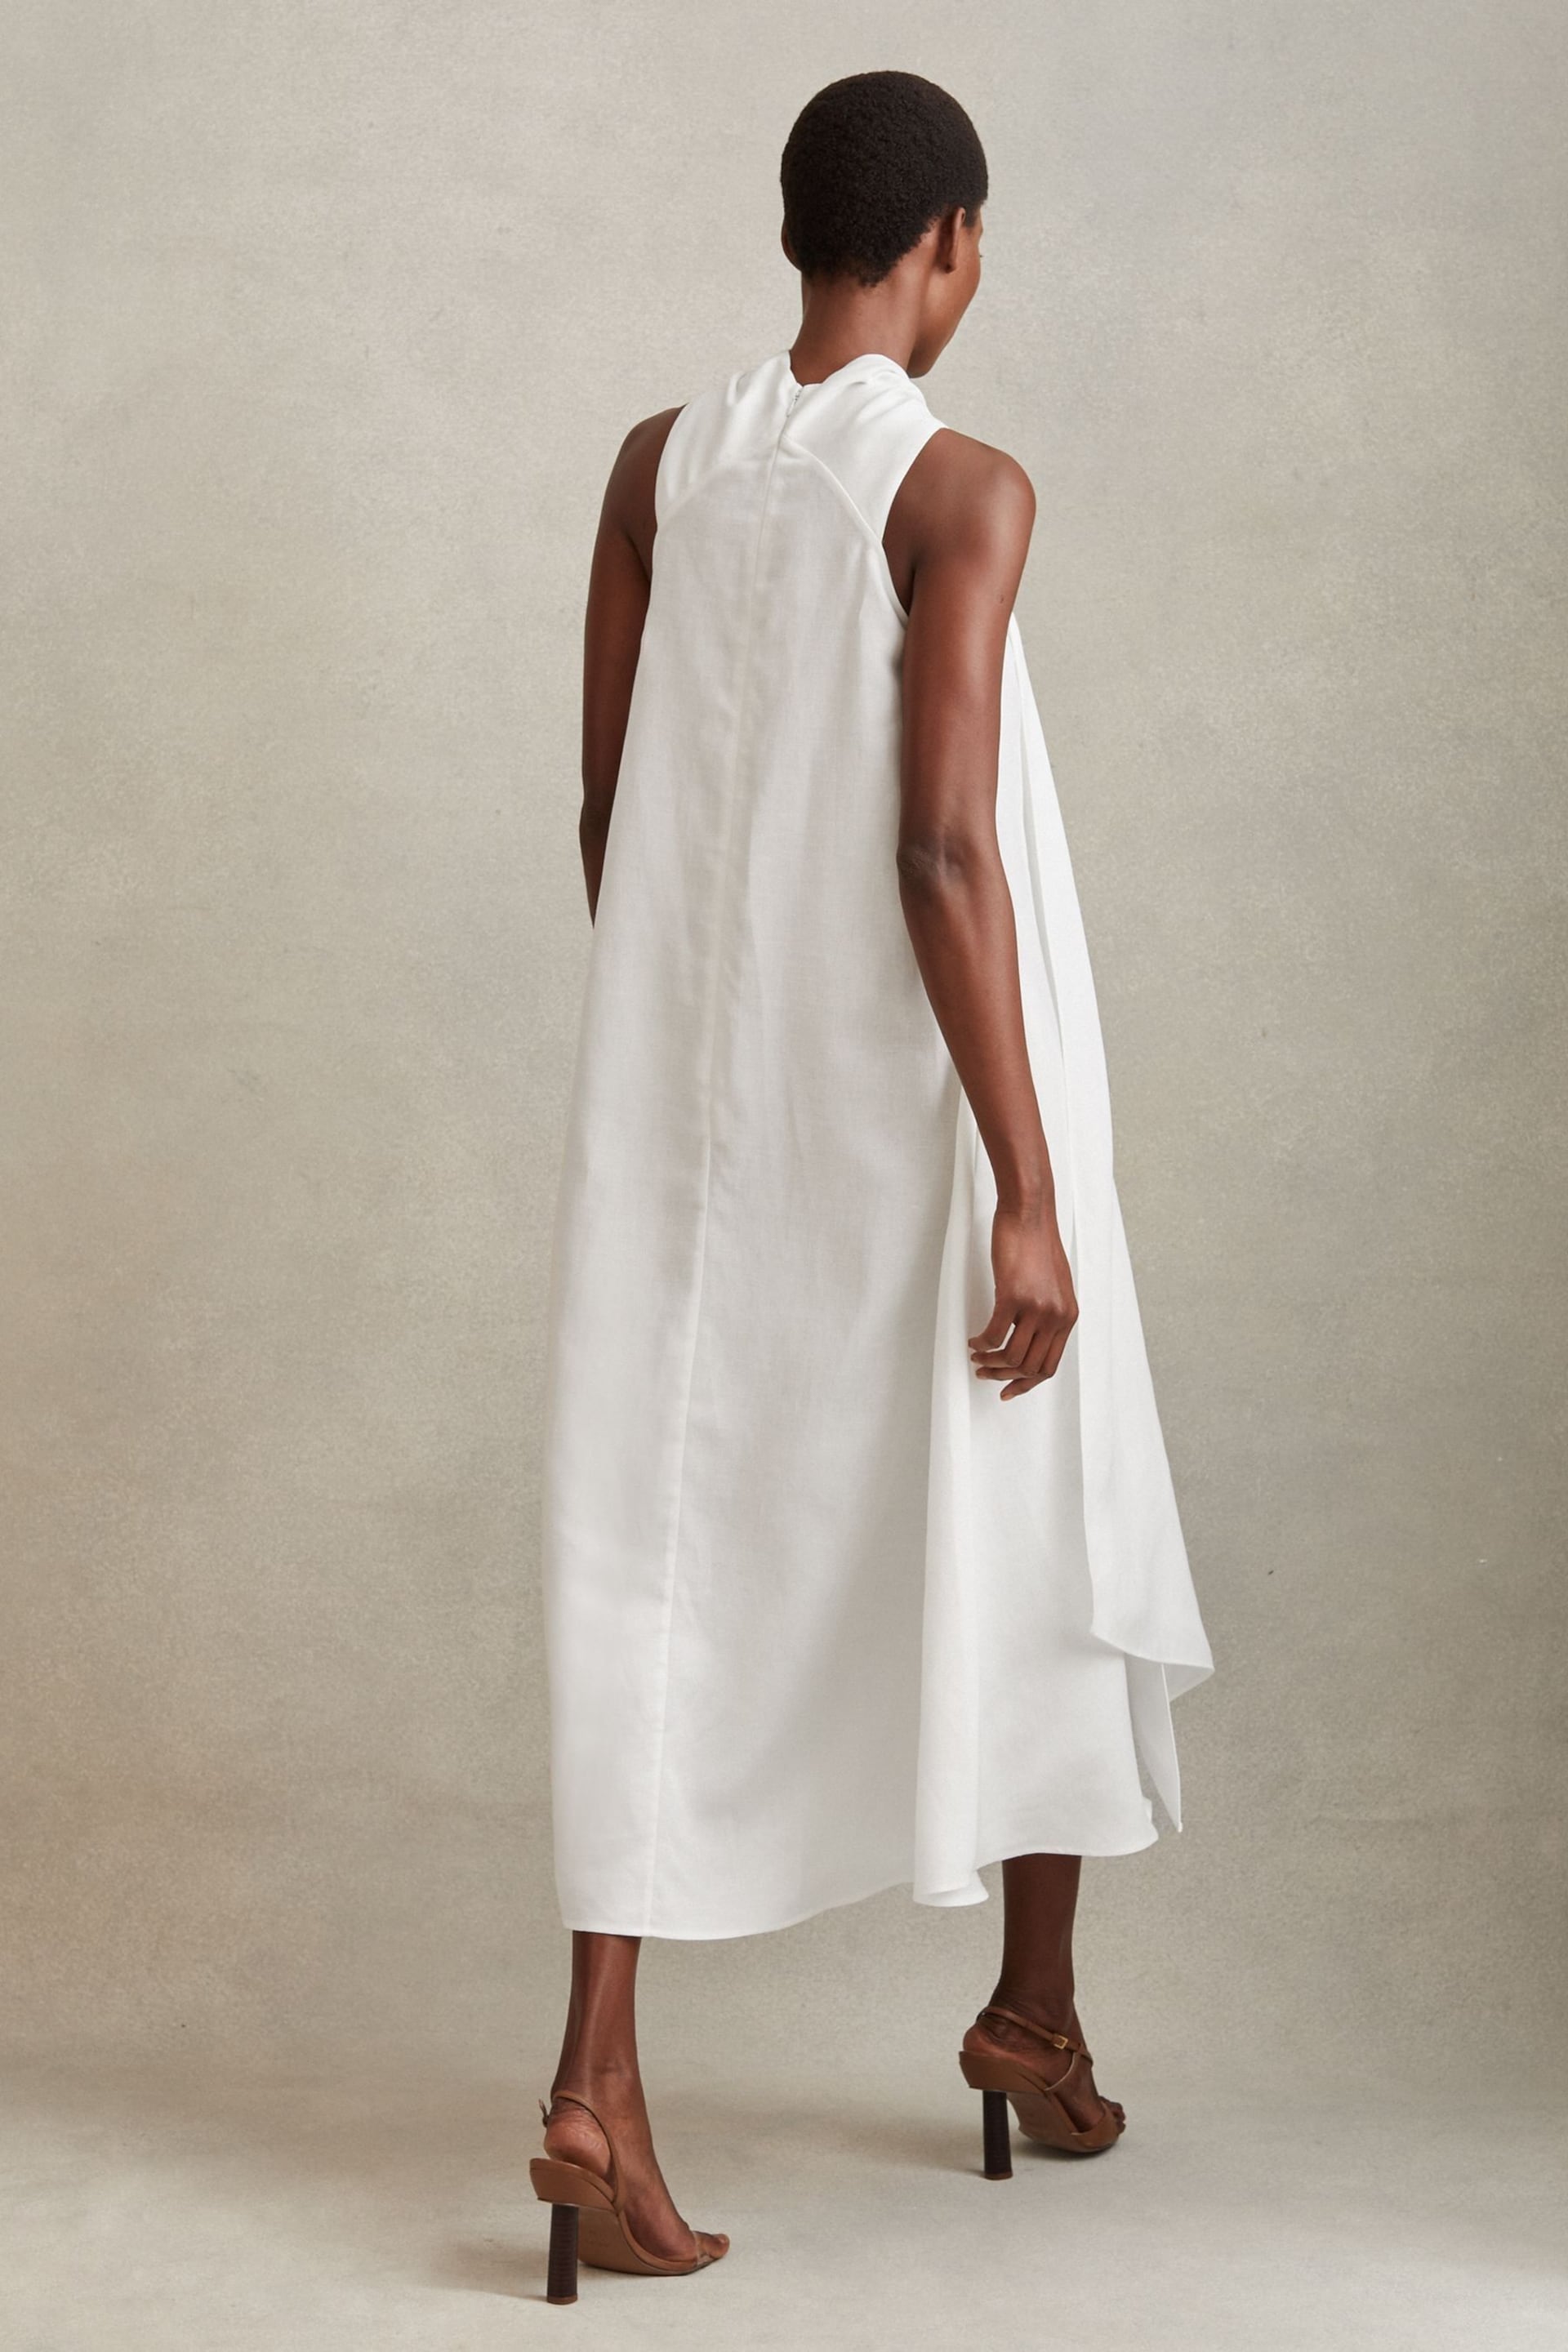 Reiss White Cosette Linen Blend Drape Midi Dress - Image 4 of 5